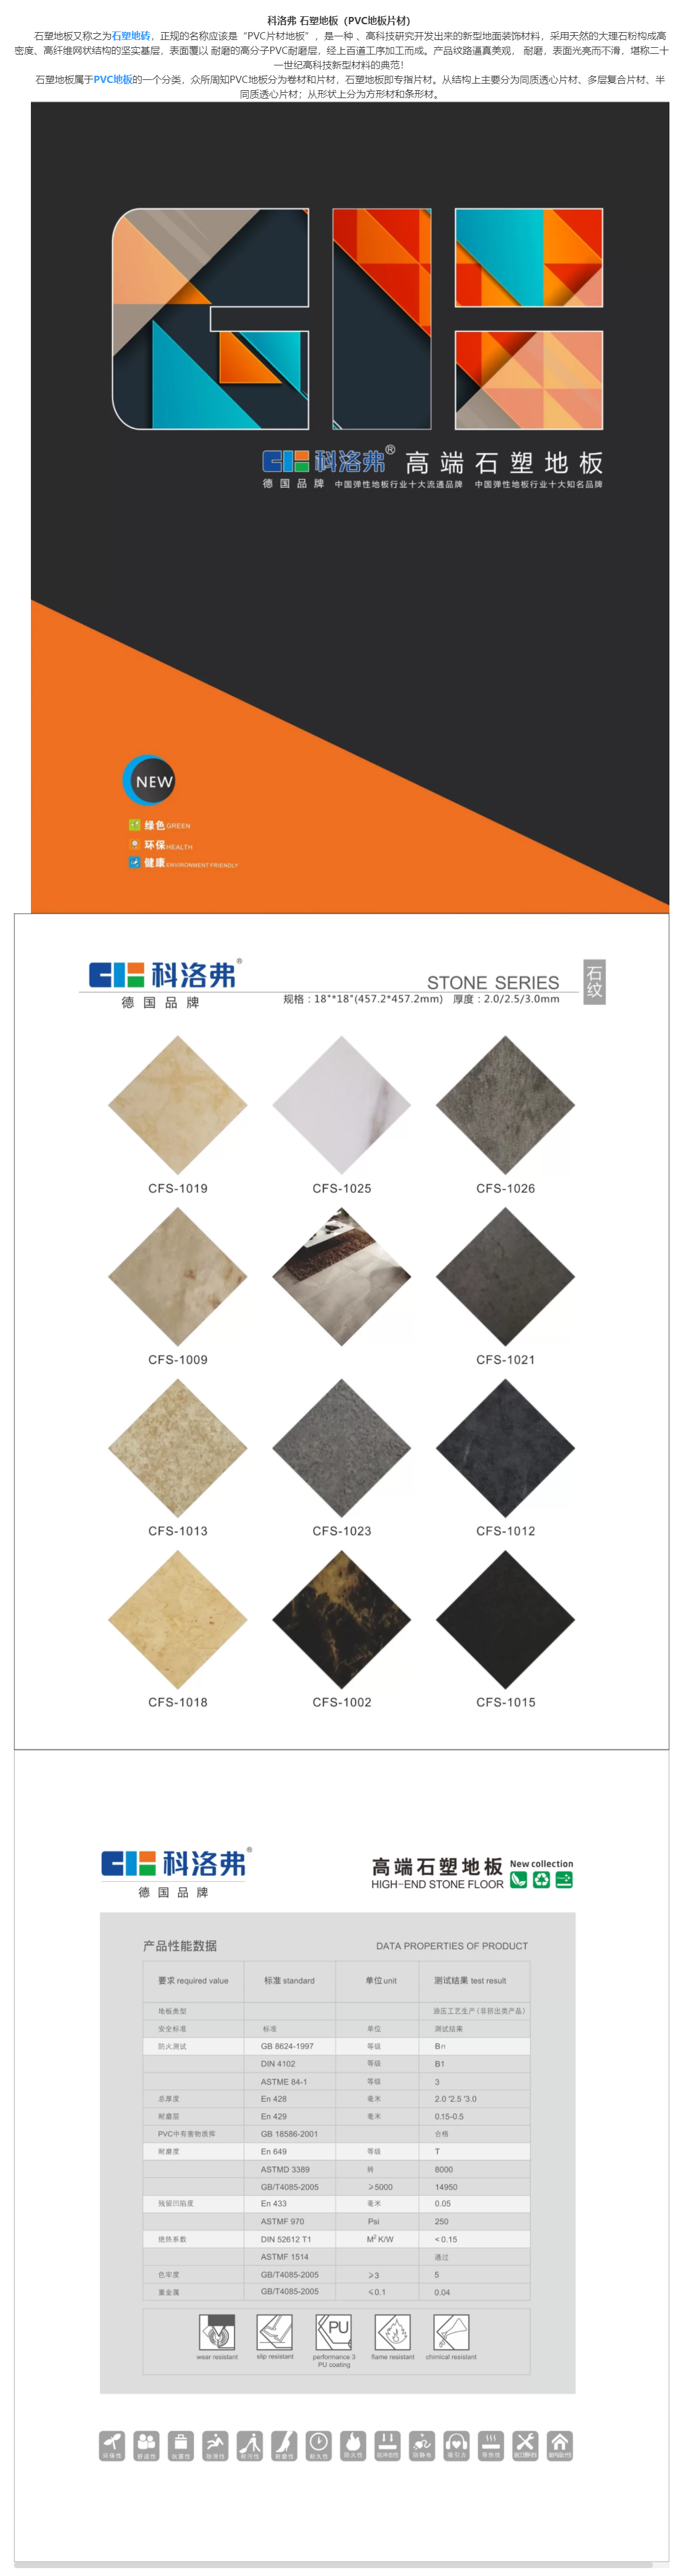 科洛弗石塑地板（PVC地板片材）,贵州峰畅建筑工程有限公司.png